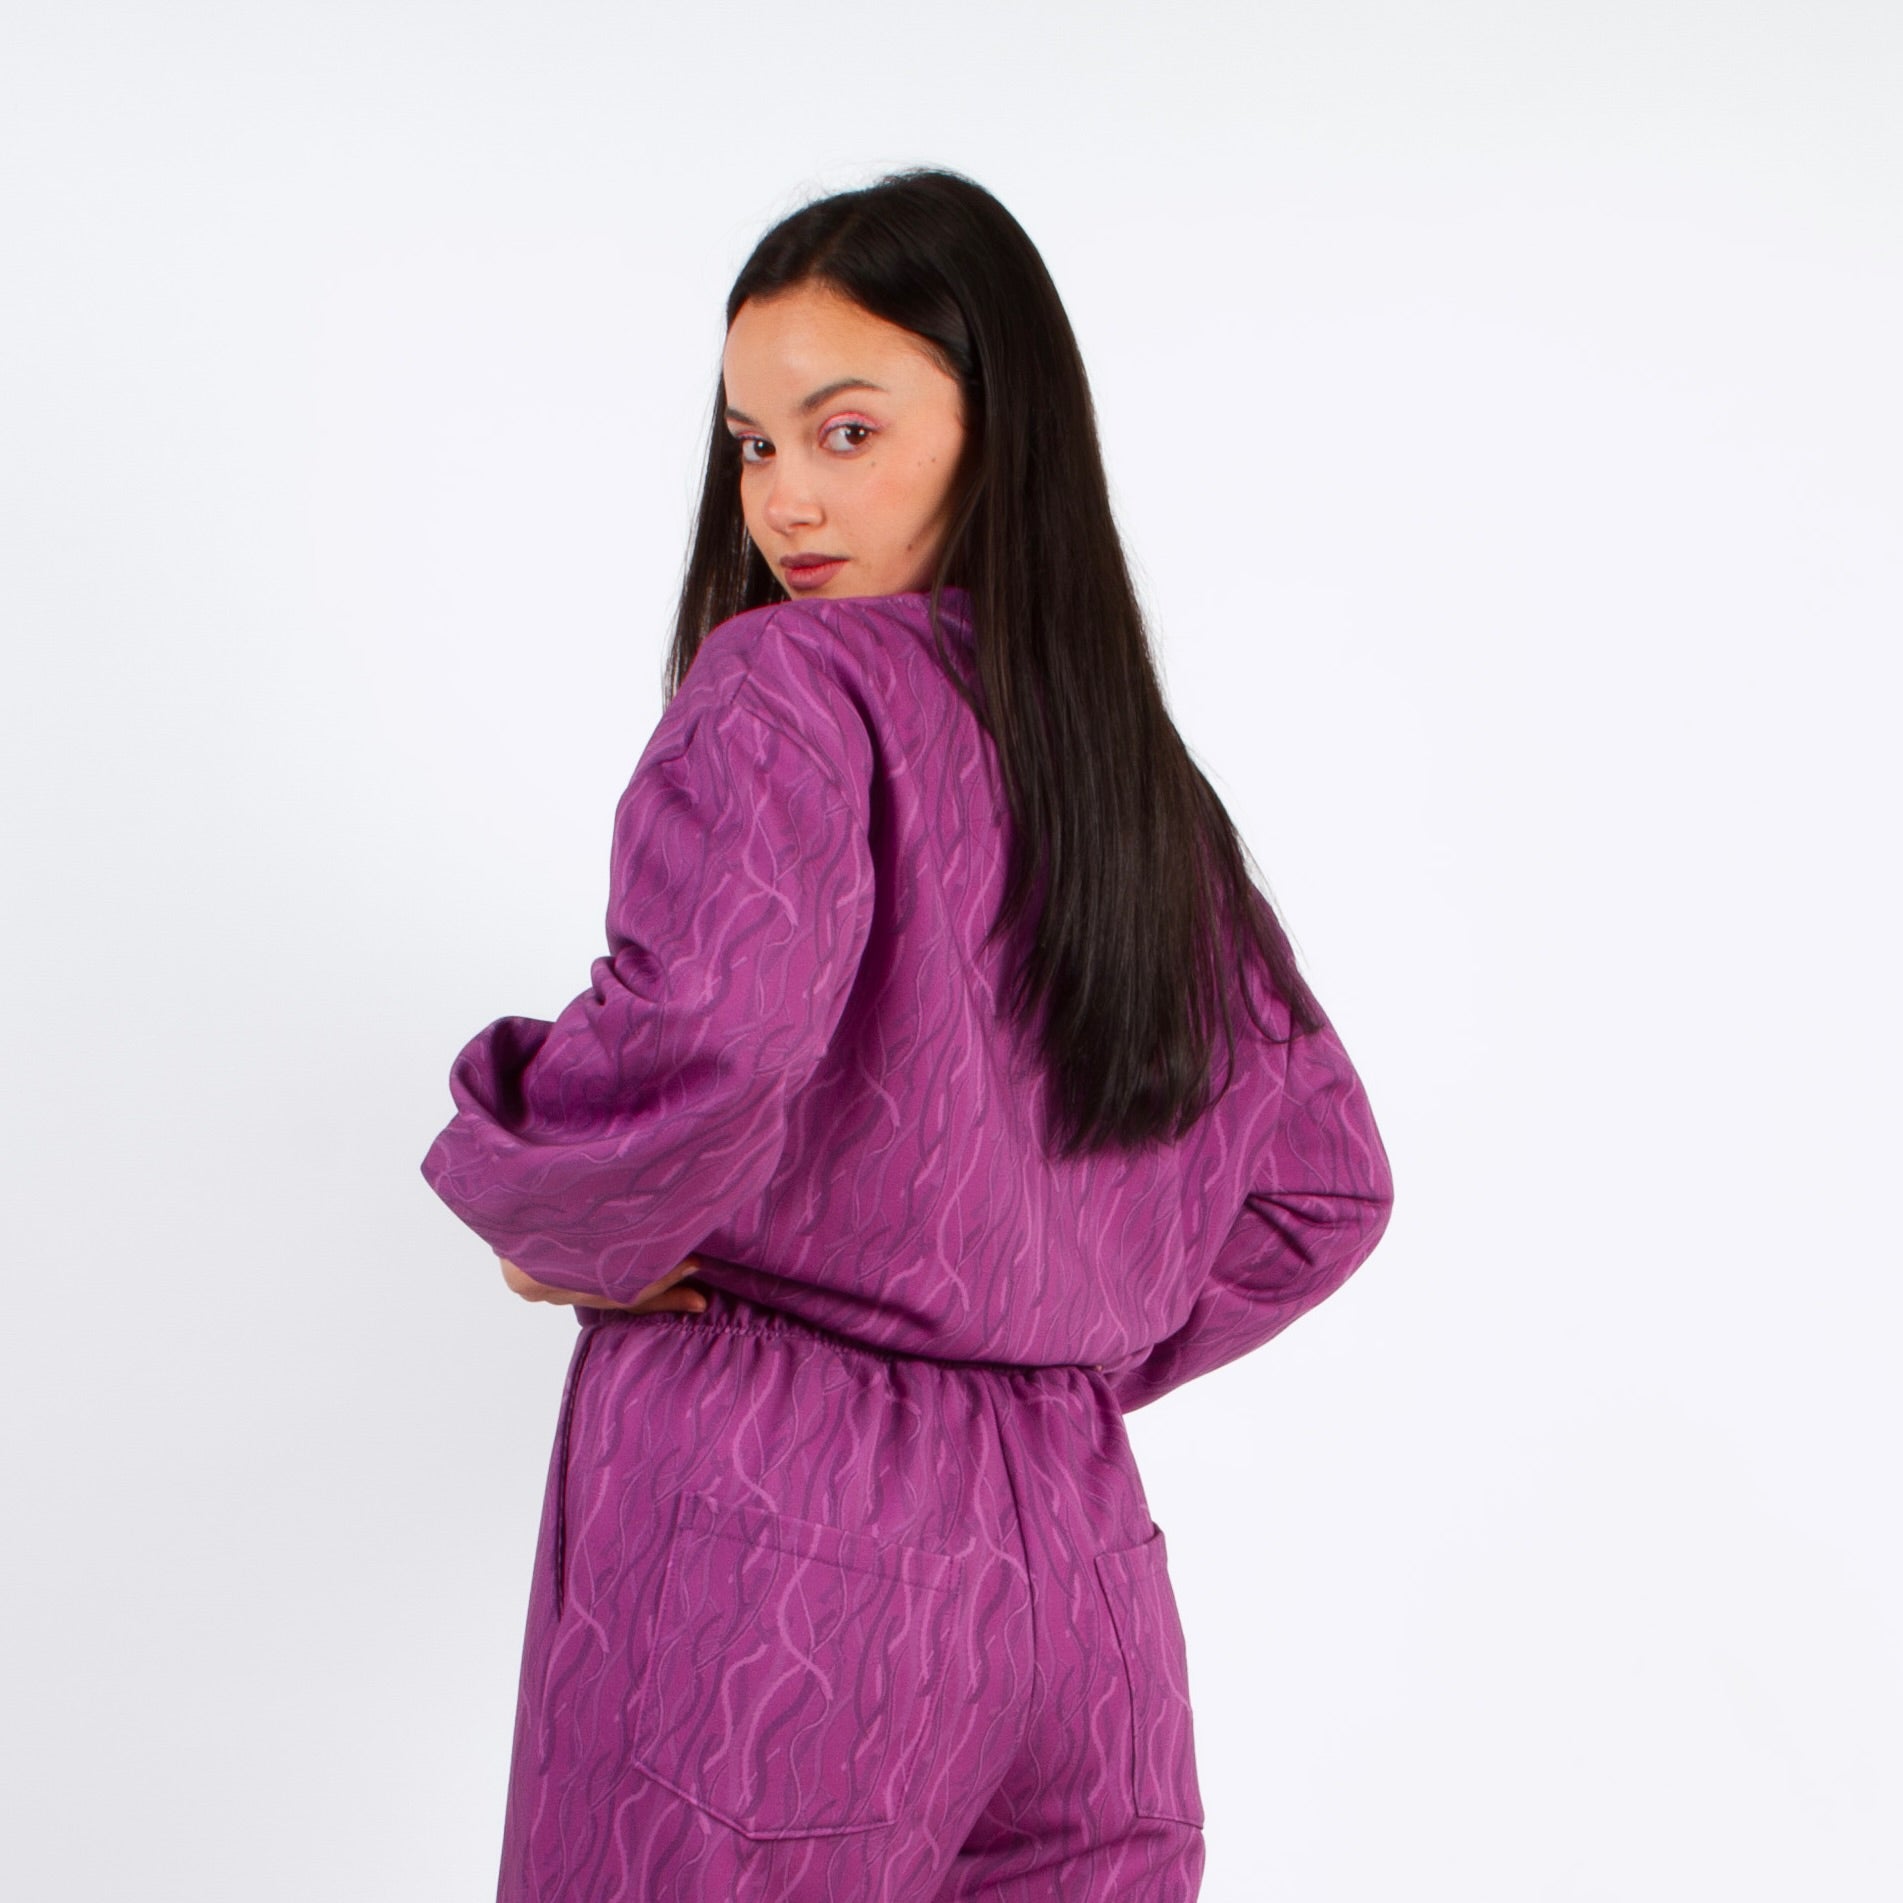 lucewear: femme portant un sweatshirt violet